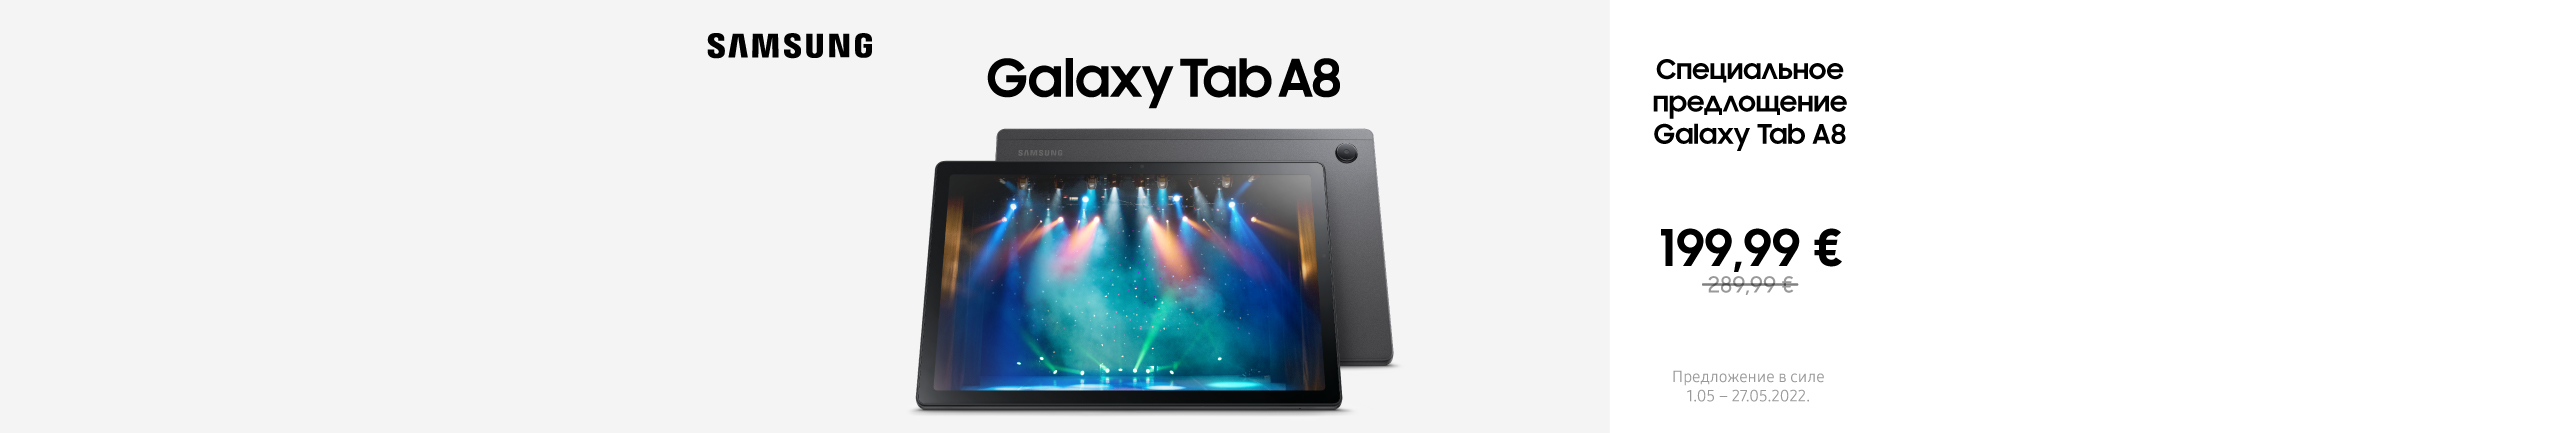 Cпециальное предлощение Samsung Galaxy Tab A8